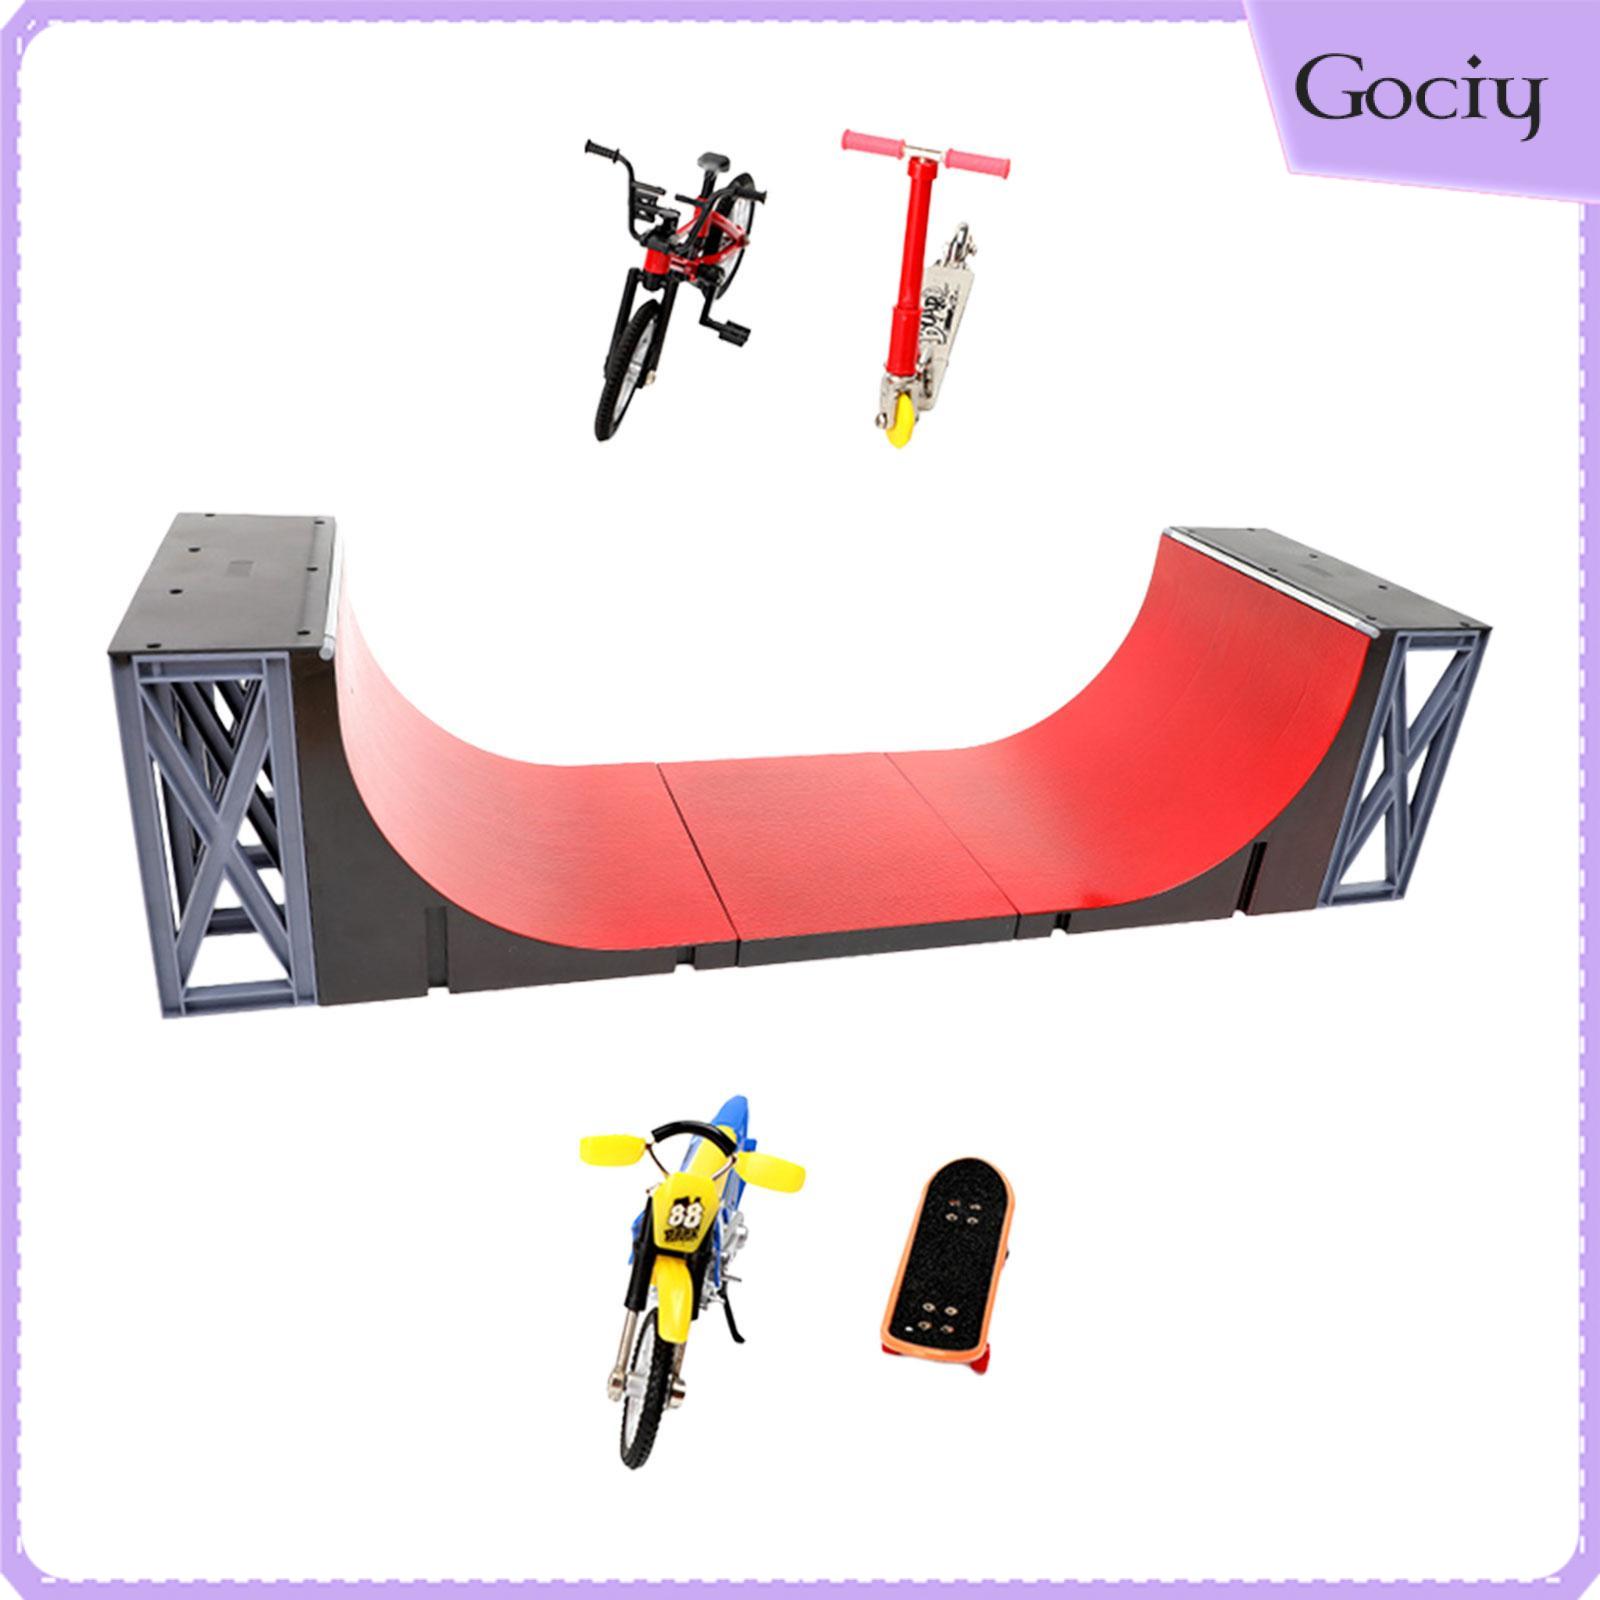 Gociy 5x Finger Skateboard Toys Fingerboard Skate Ramps for Kids Girls Boys